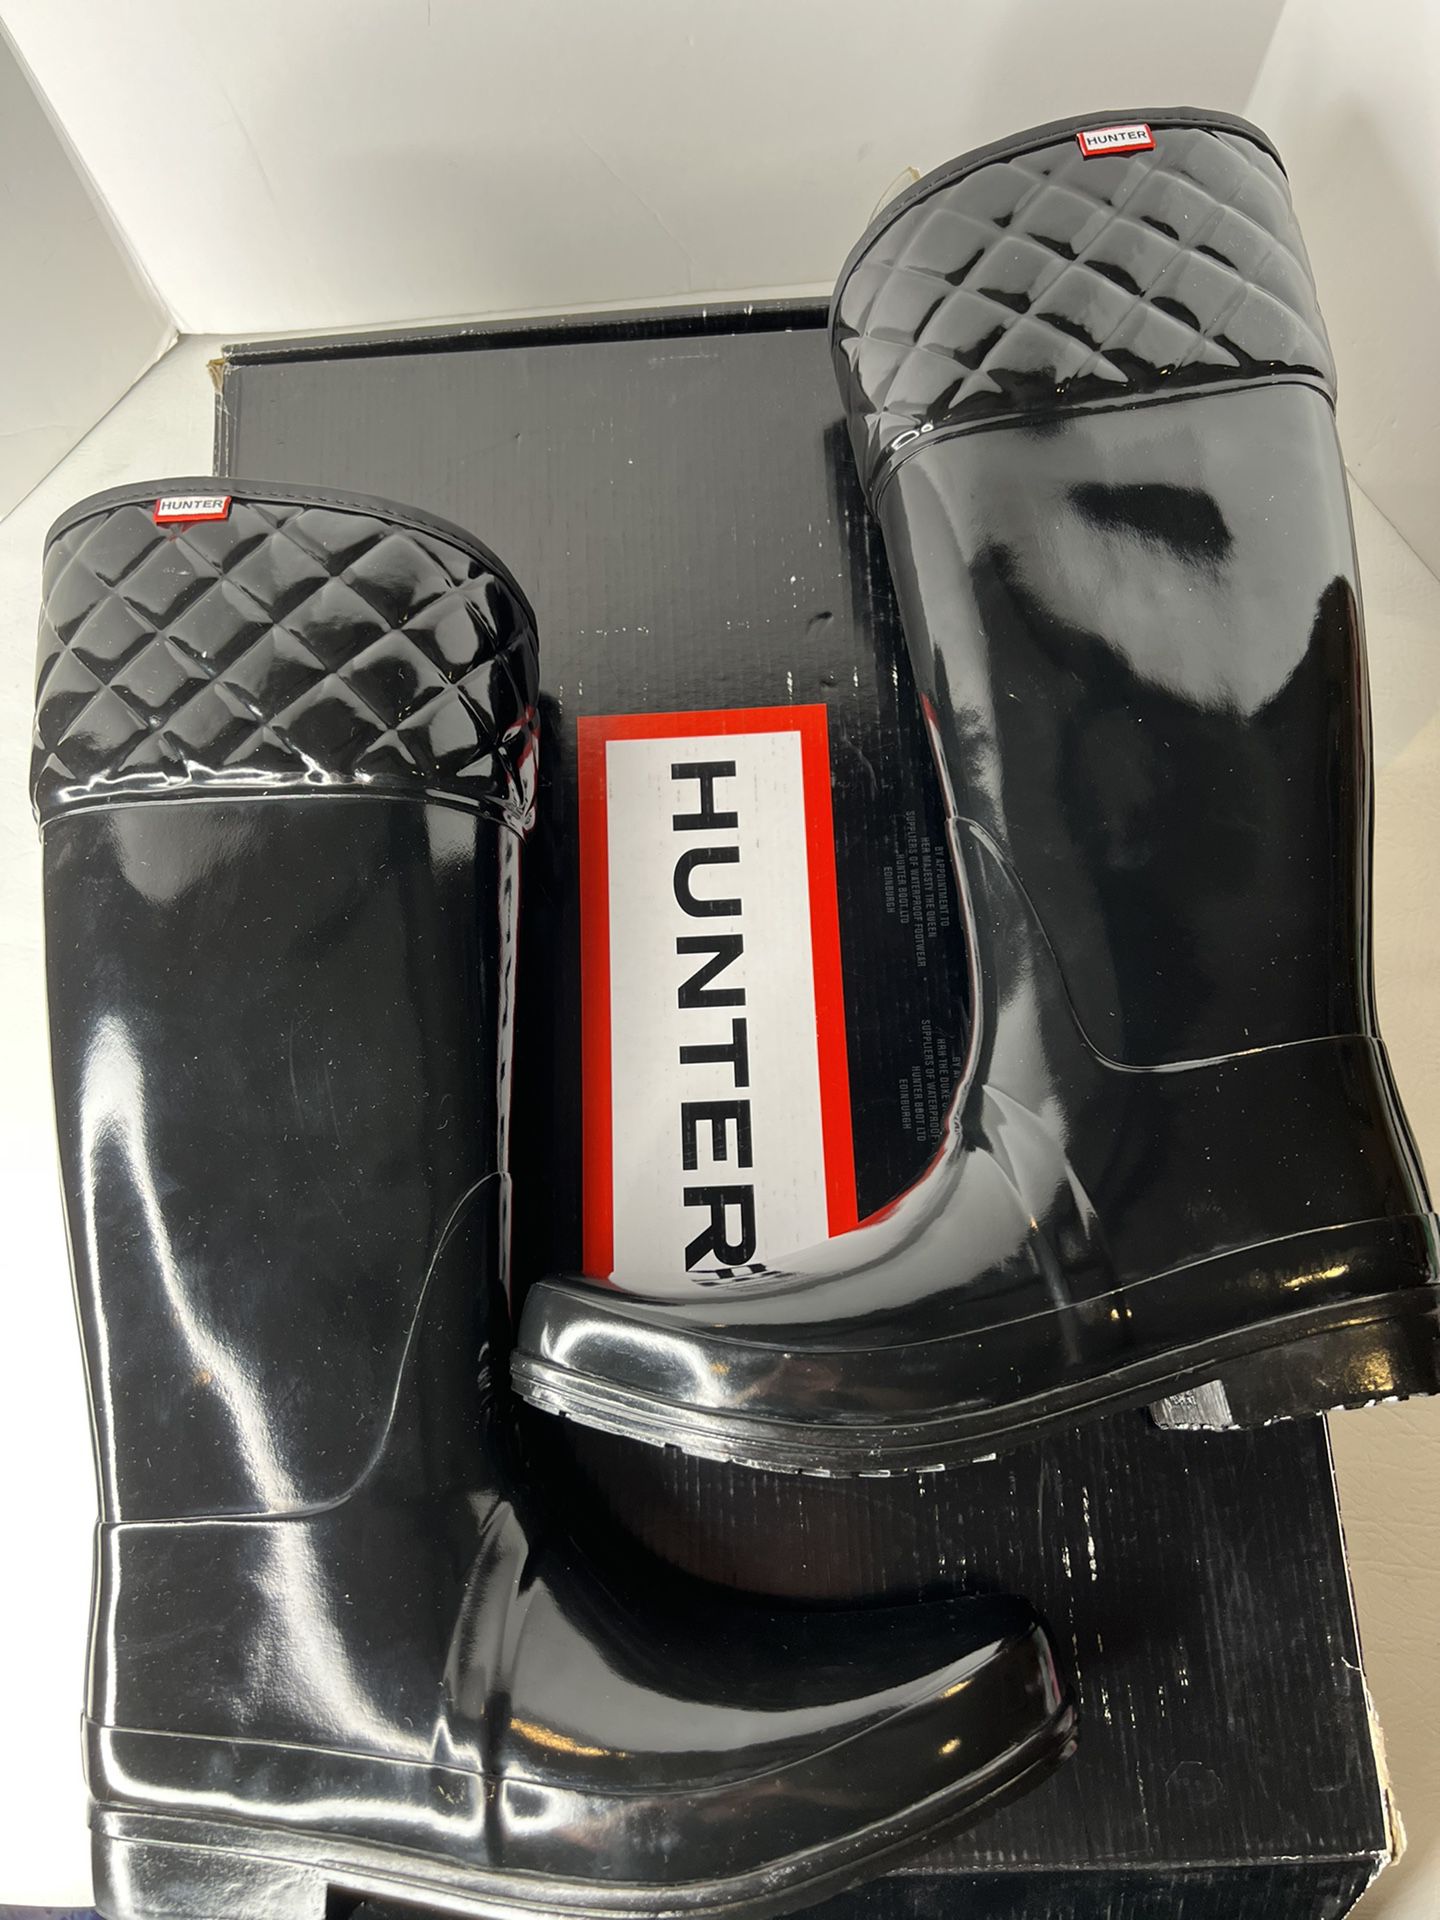 NEW in box HUNTER black rubber rain boots size 11